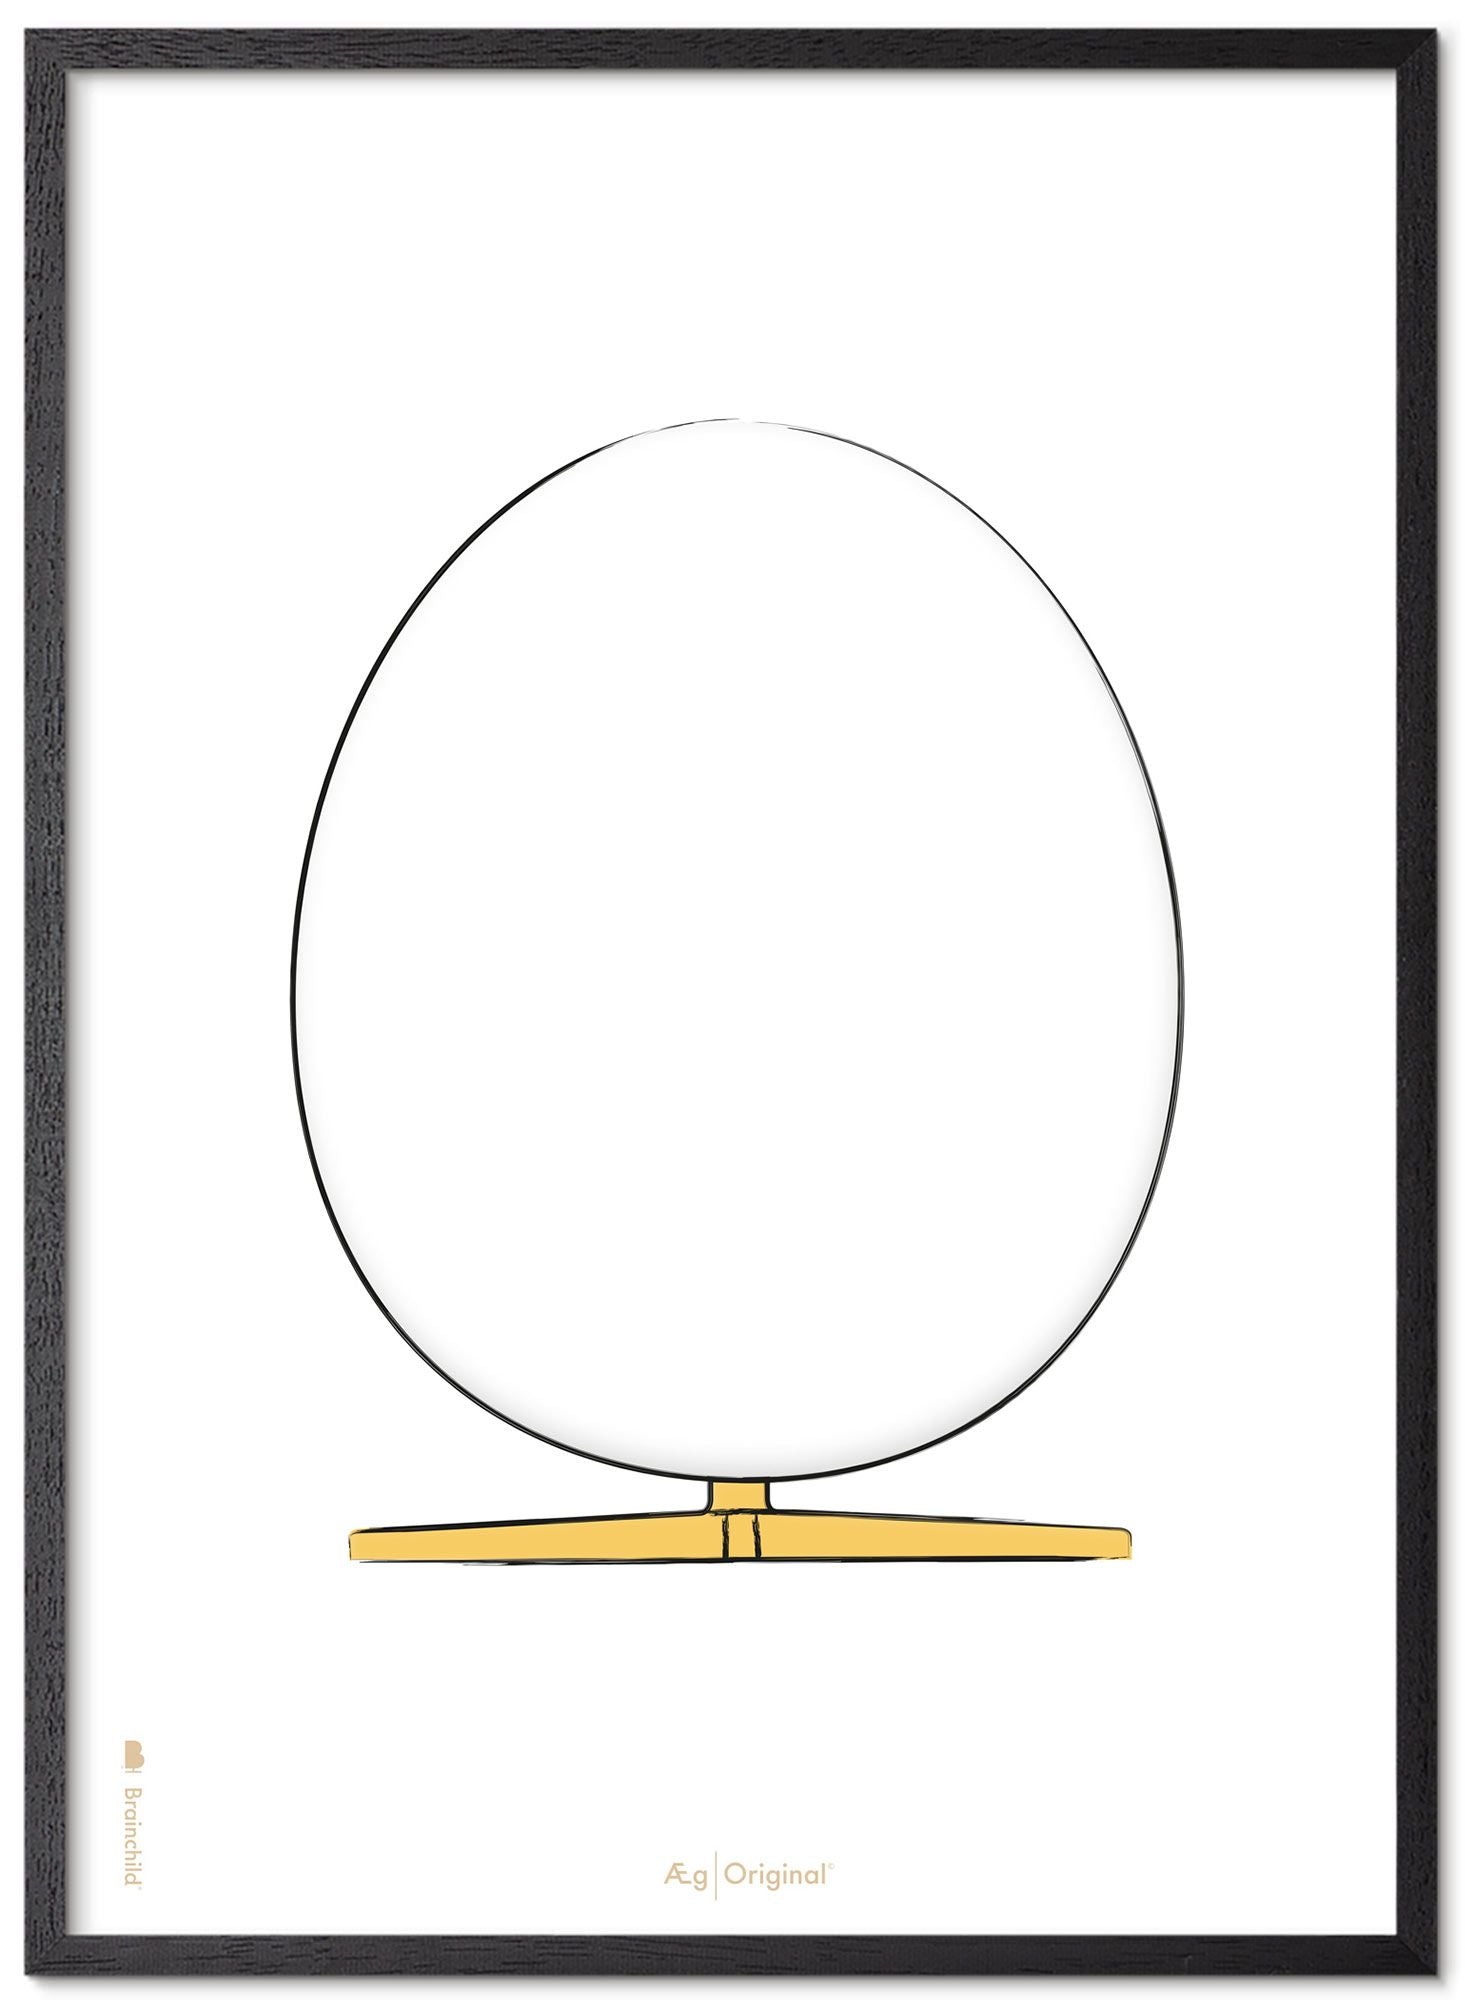 Prepare el marco de póster de boceto de diseño de huevo hecho de madera lacada negra de 30x40 cm, fondo blanco